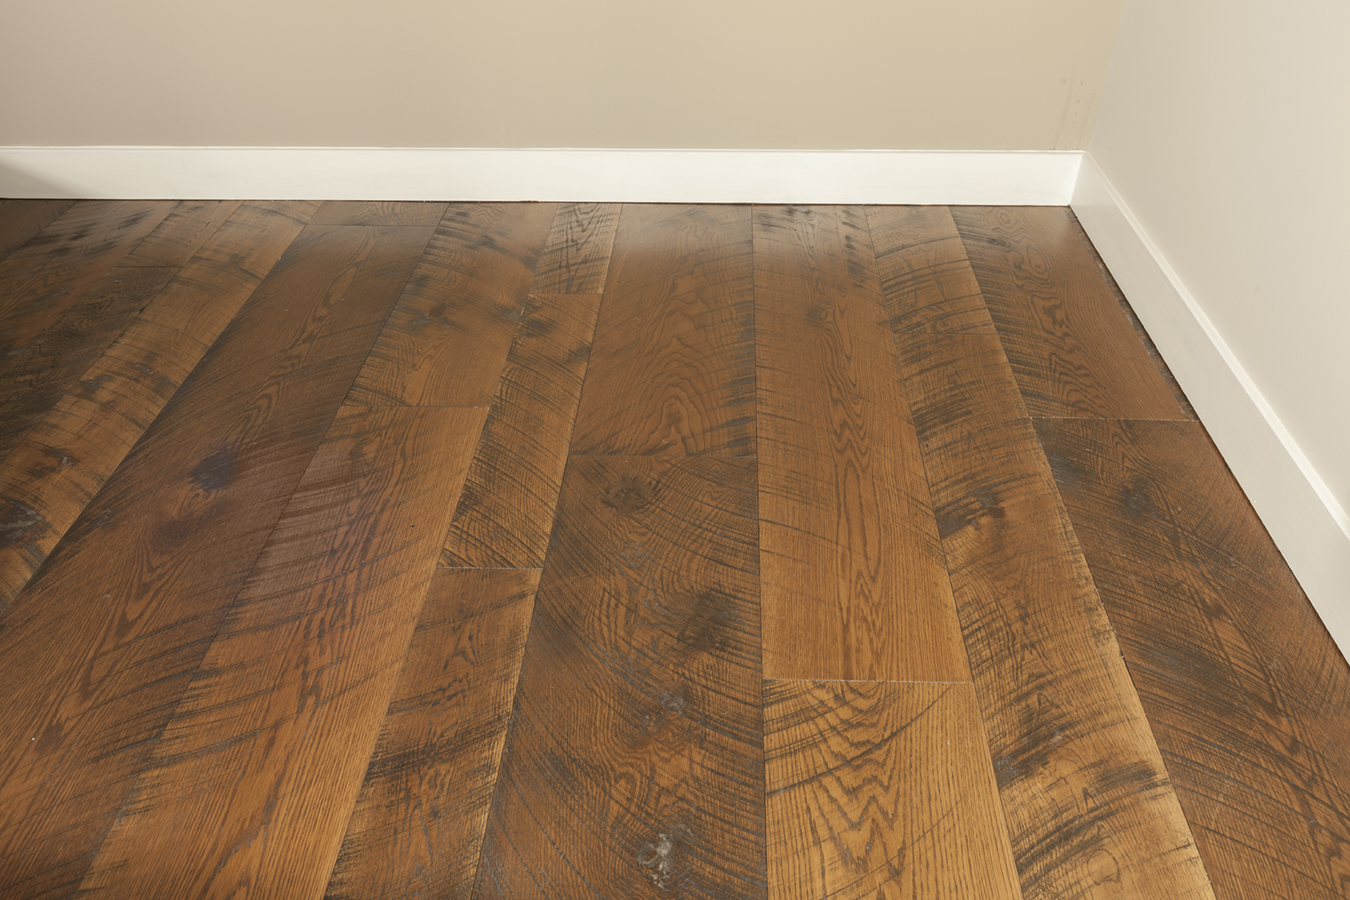 Why Choose Handsed Distressed Wide, Distressed Solid Hardwood Flooring